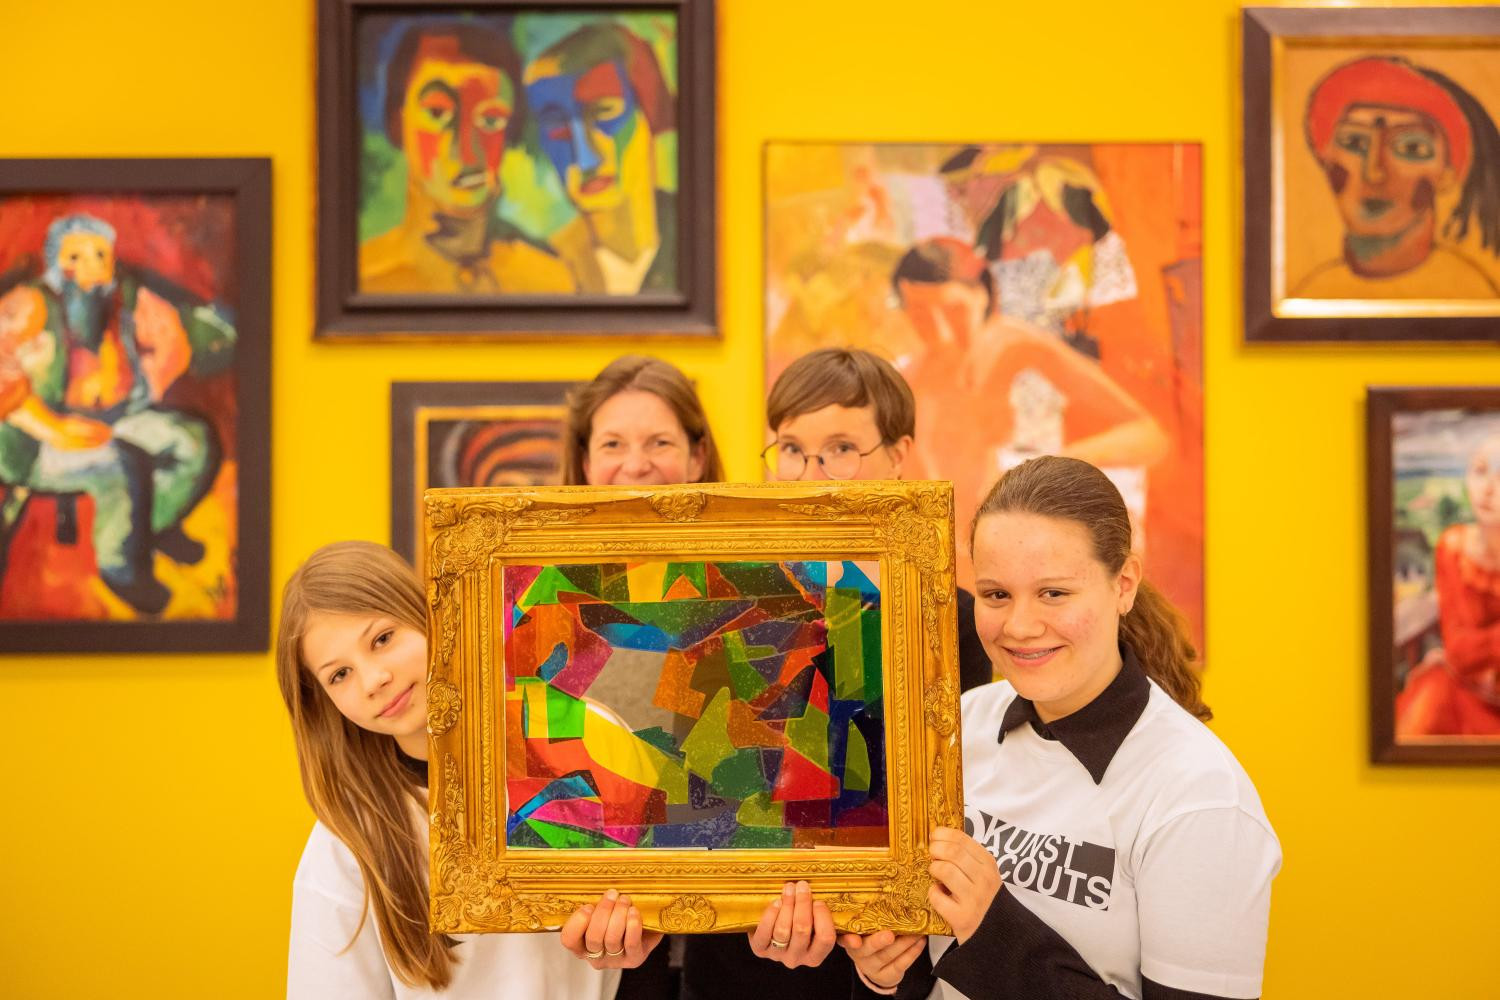 Vier Personen - zwei Erwachsene und zwei Jugendliche - halten ein buntes, Bild mit vielen unterschiedlichen Formen hoch. Im Hintergrund ist eine strahlend gelbe Wand, an der verschiedene impressionistische Kunstwerke hängen.